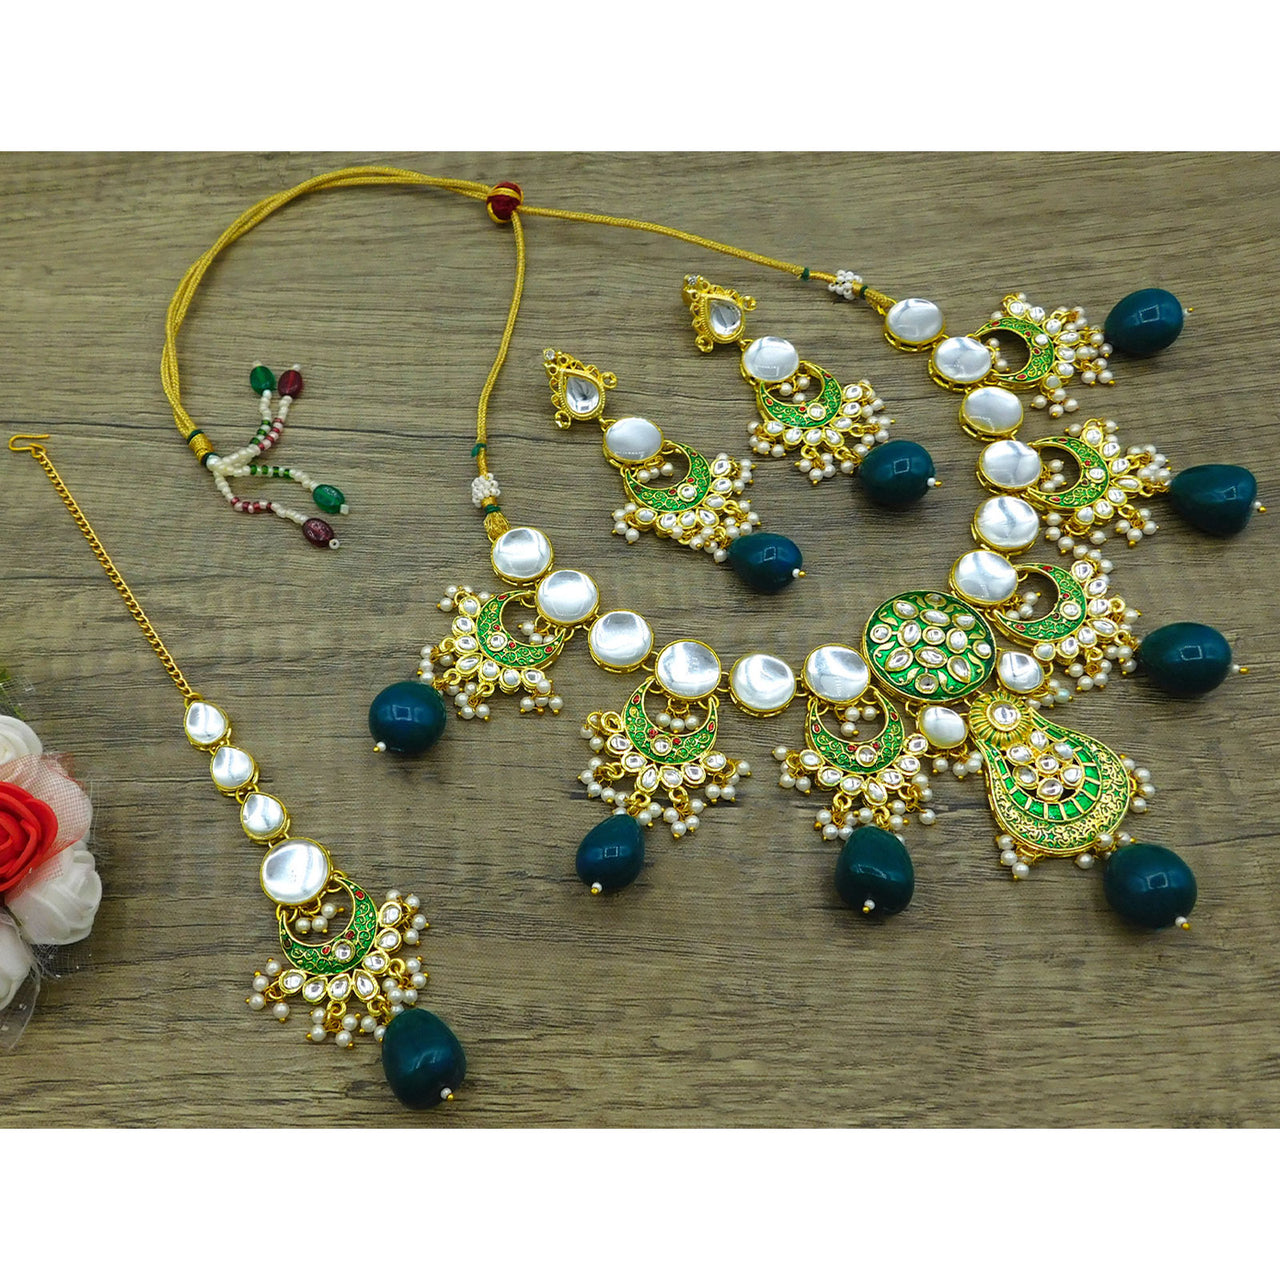 Sujwel Gold Toned Kundan Lamination Floral Design Necklace Set (08-0456)